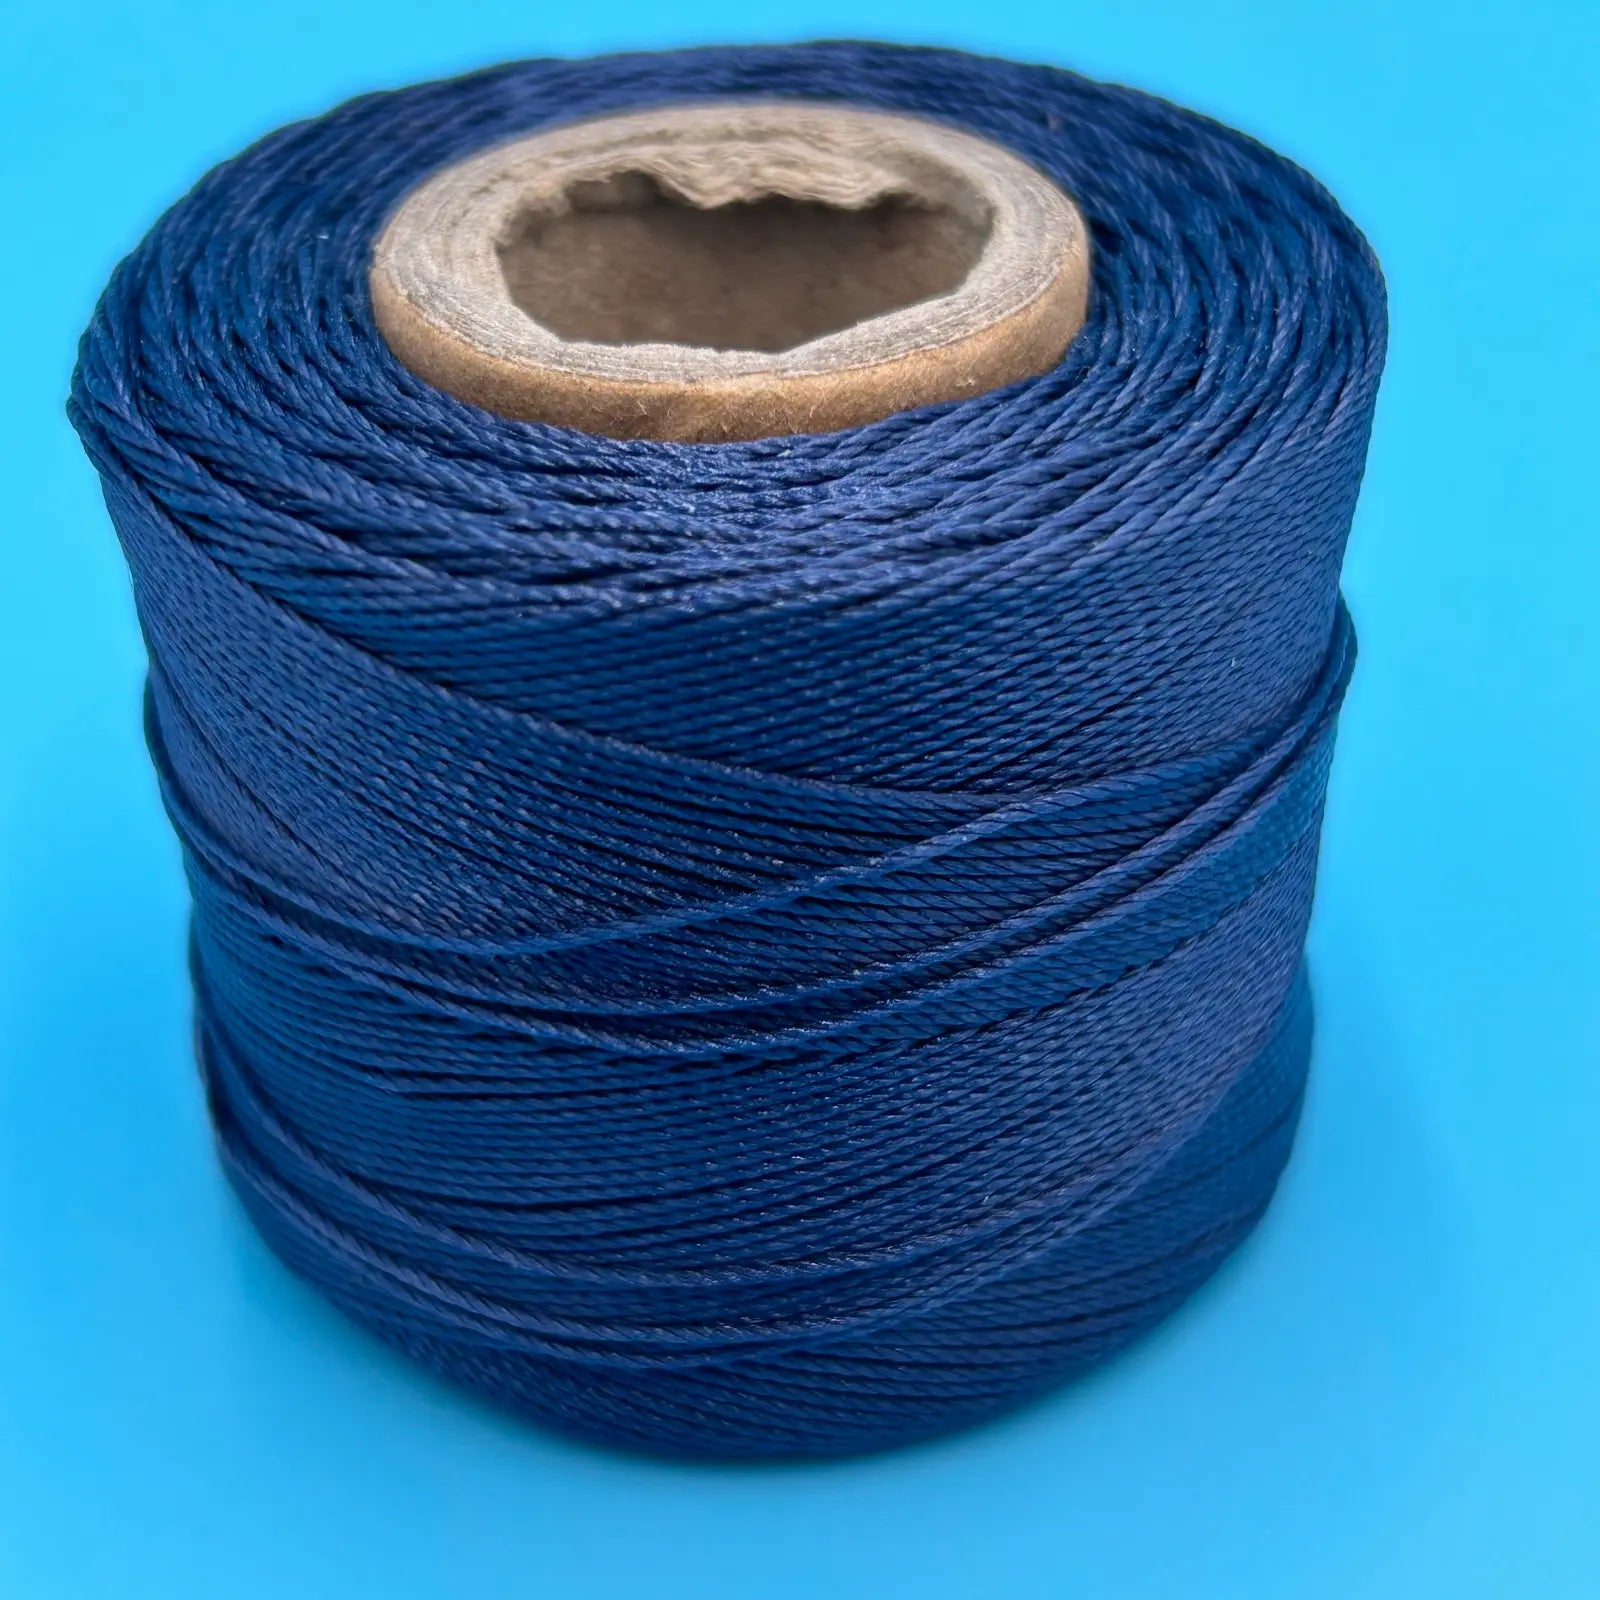 Conso #18 Bonded Nylon Heavy Hand Sewing Thread - 765 Navy